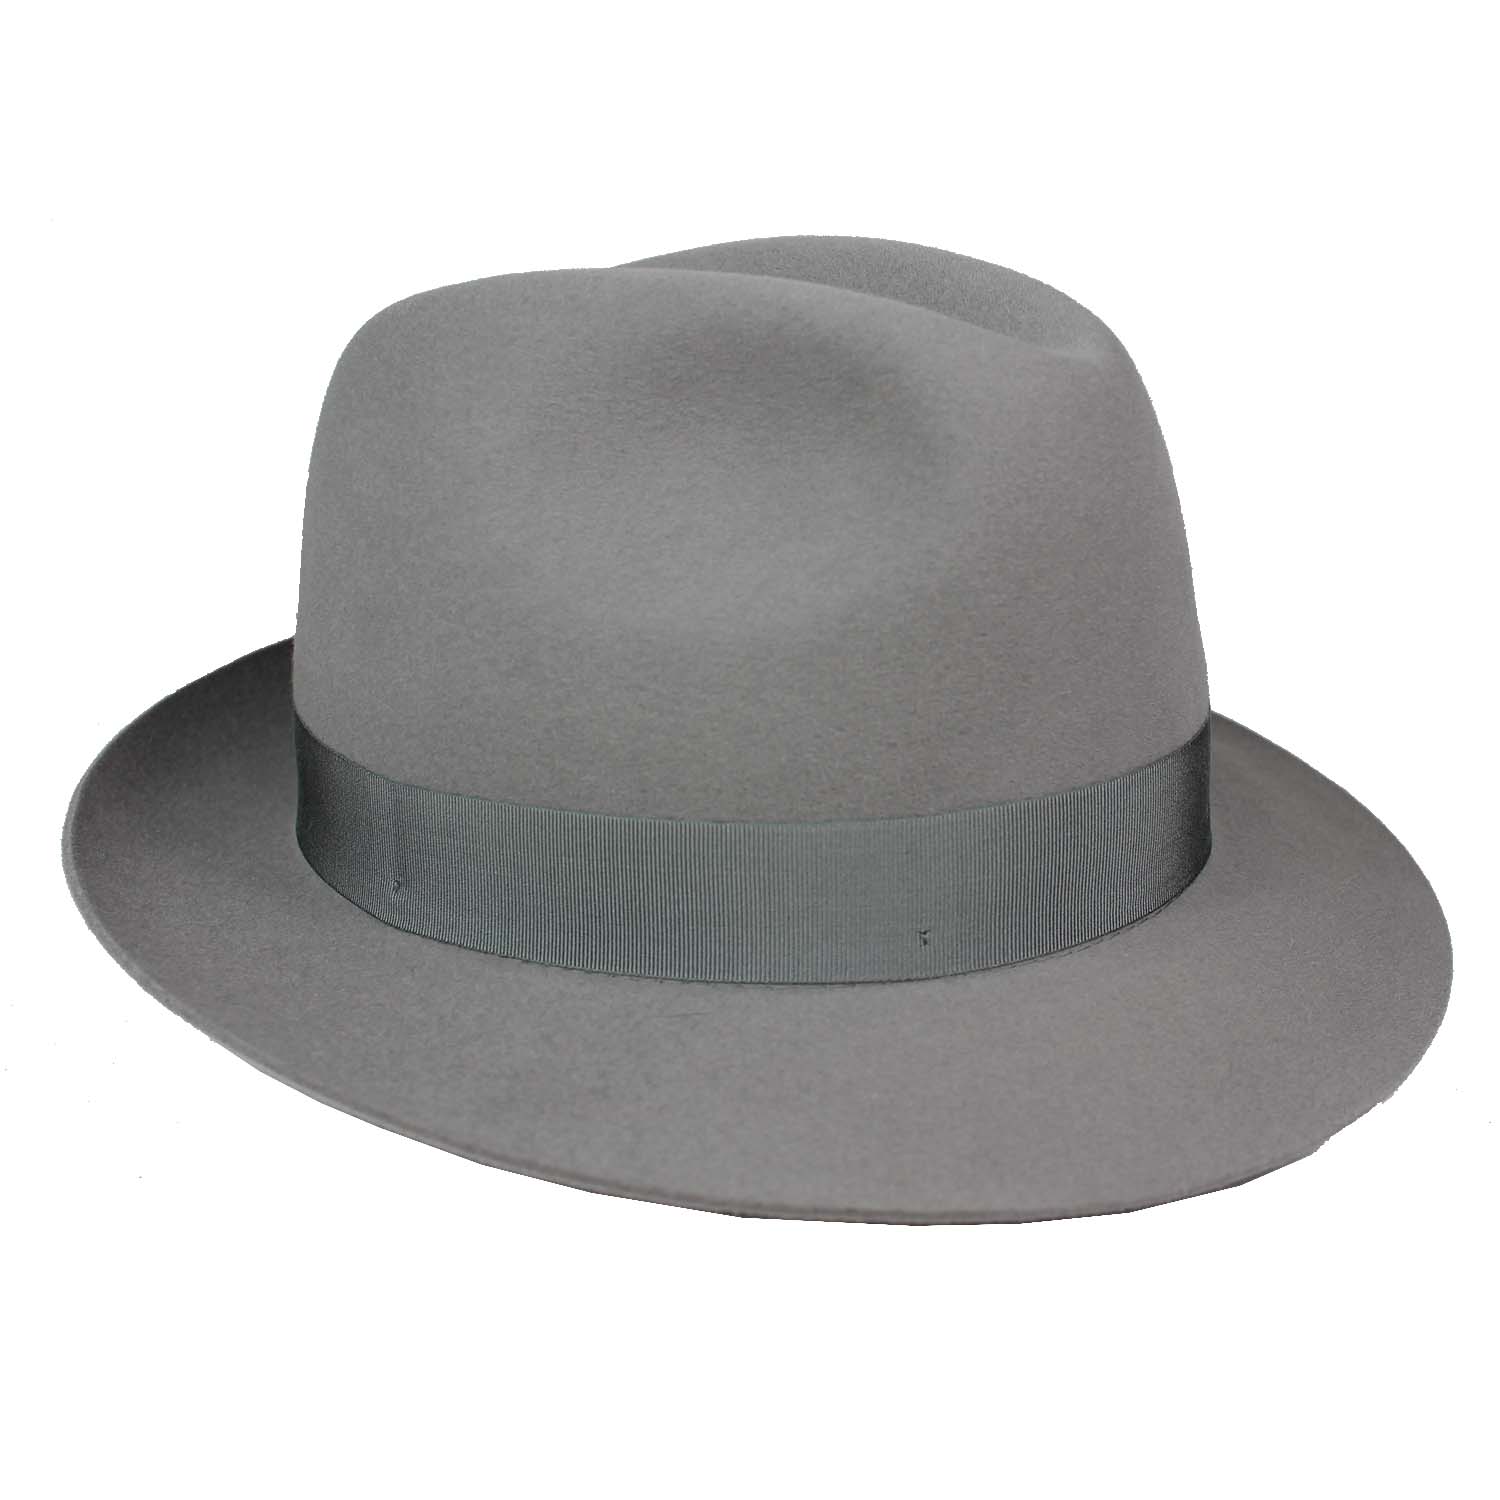 cappello-marchio-borsalino-modello-fedora-a-falda-media-in-feltro-di-lepre-colore-grigio-chiaro